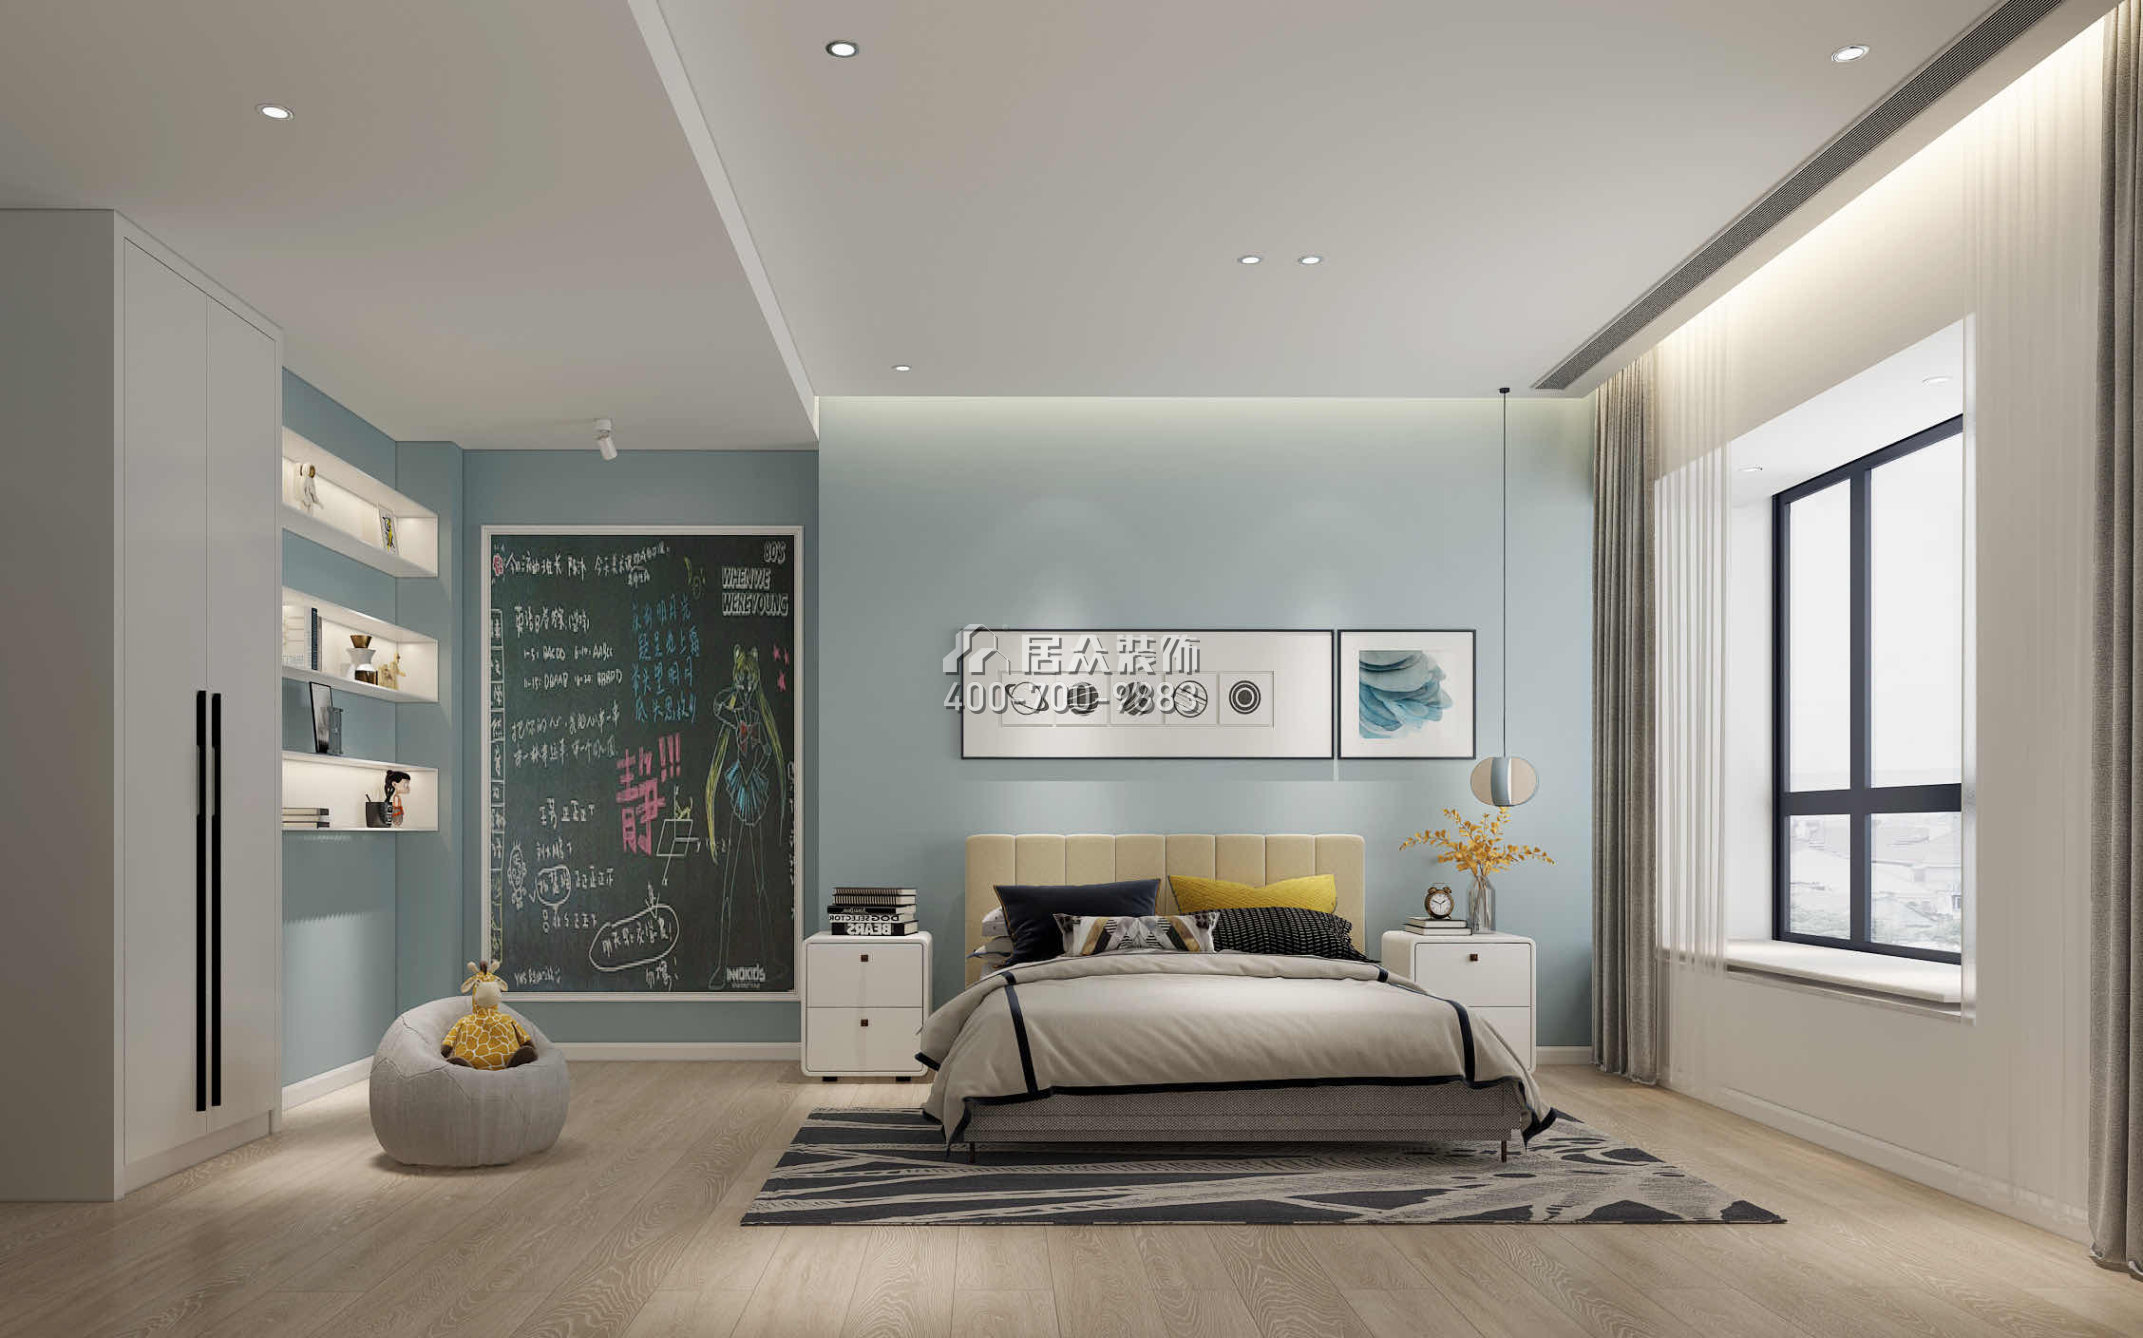 锦绣山河268平方米现代简约风格平层户型卧室装修效果图